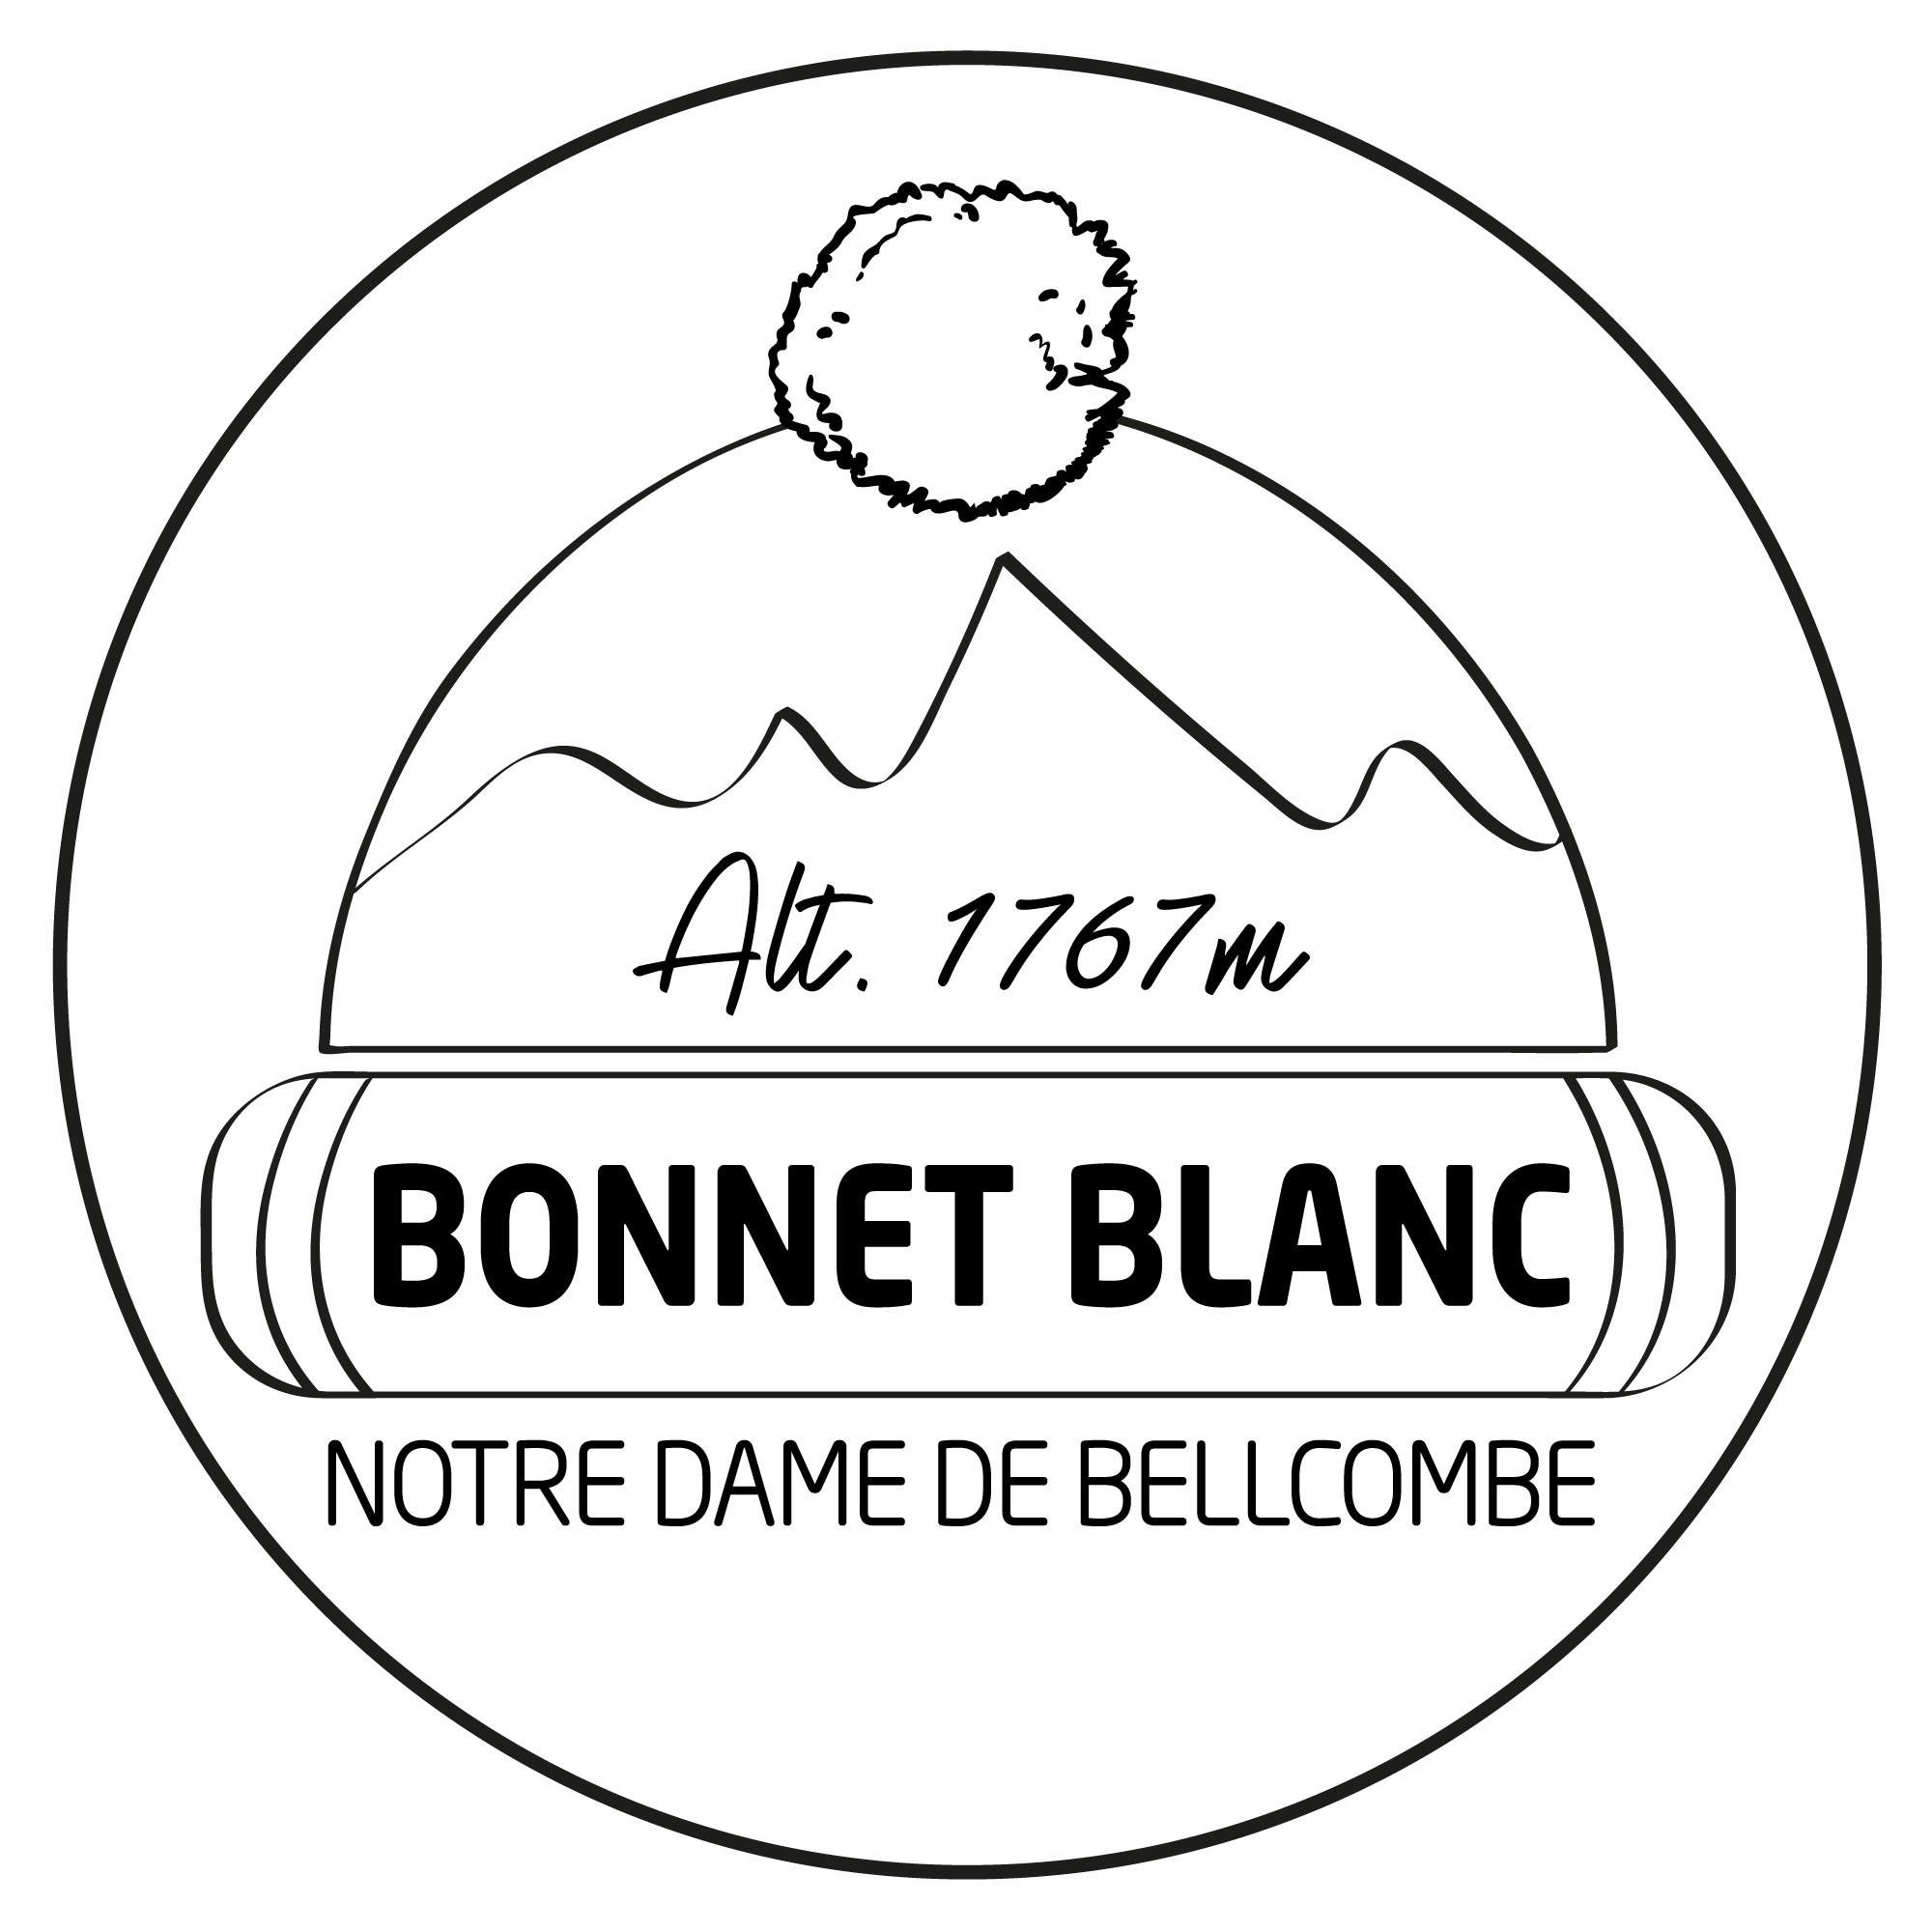 Le Bonnet Blanc Logo.jpg